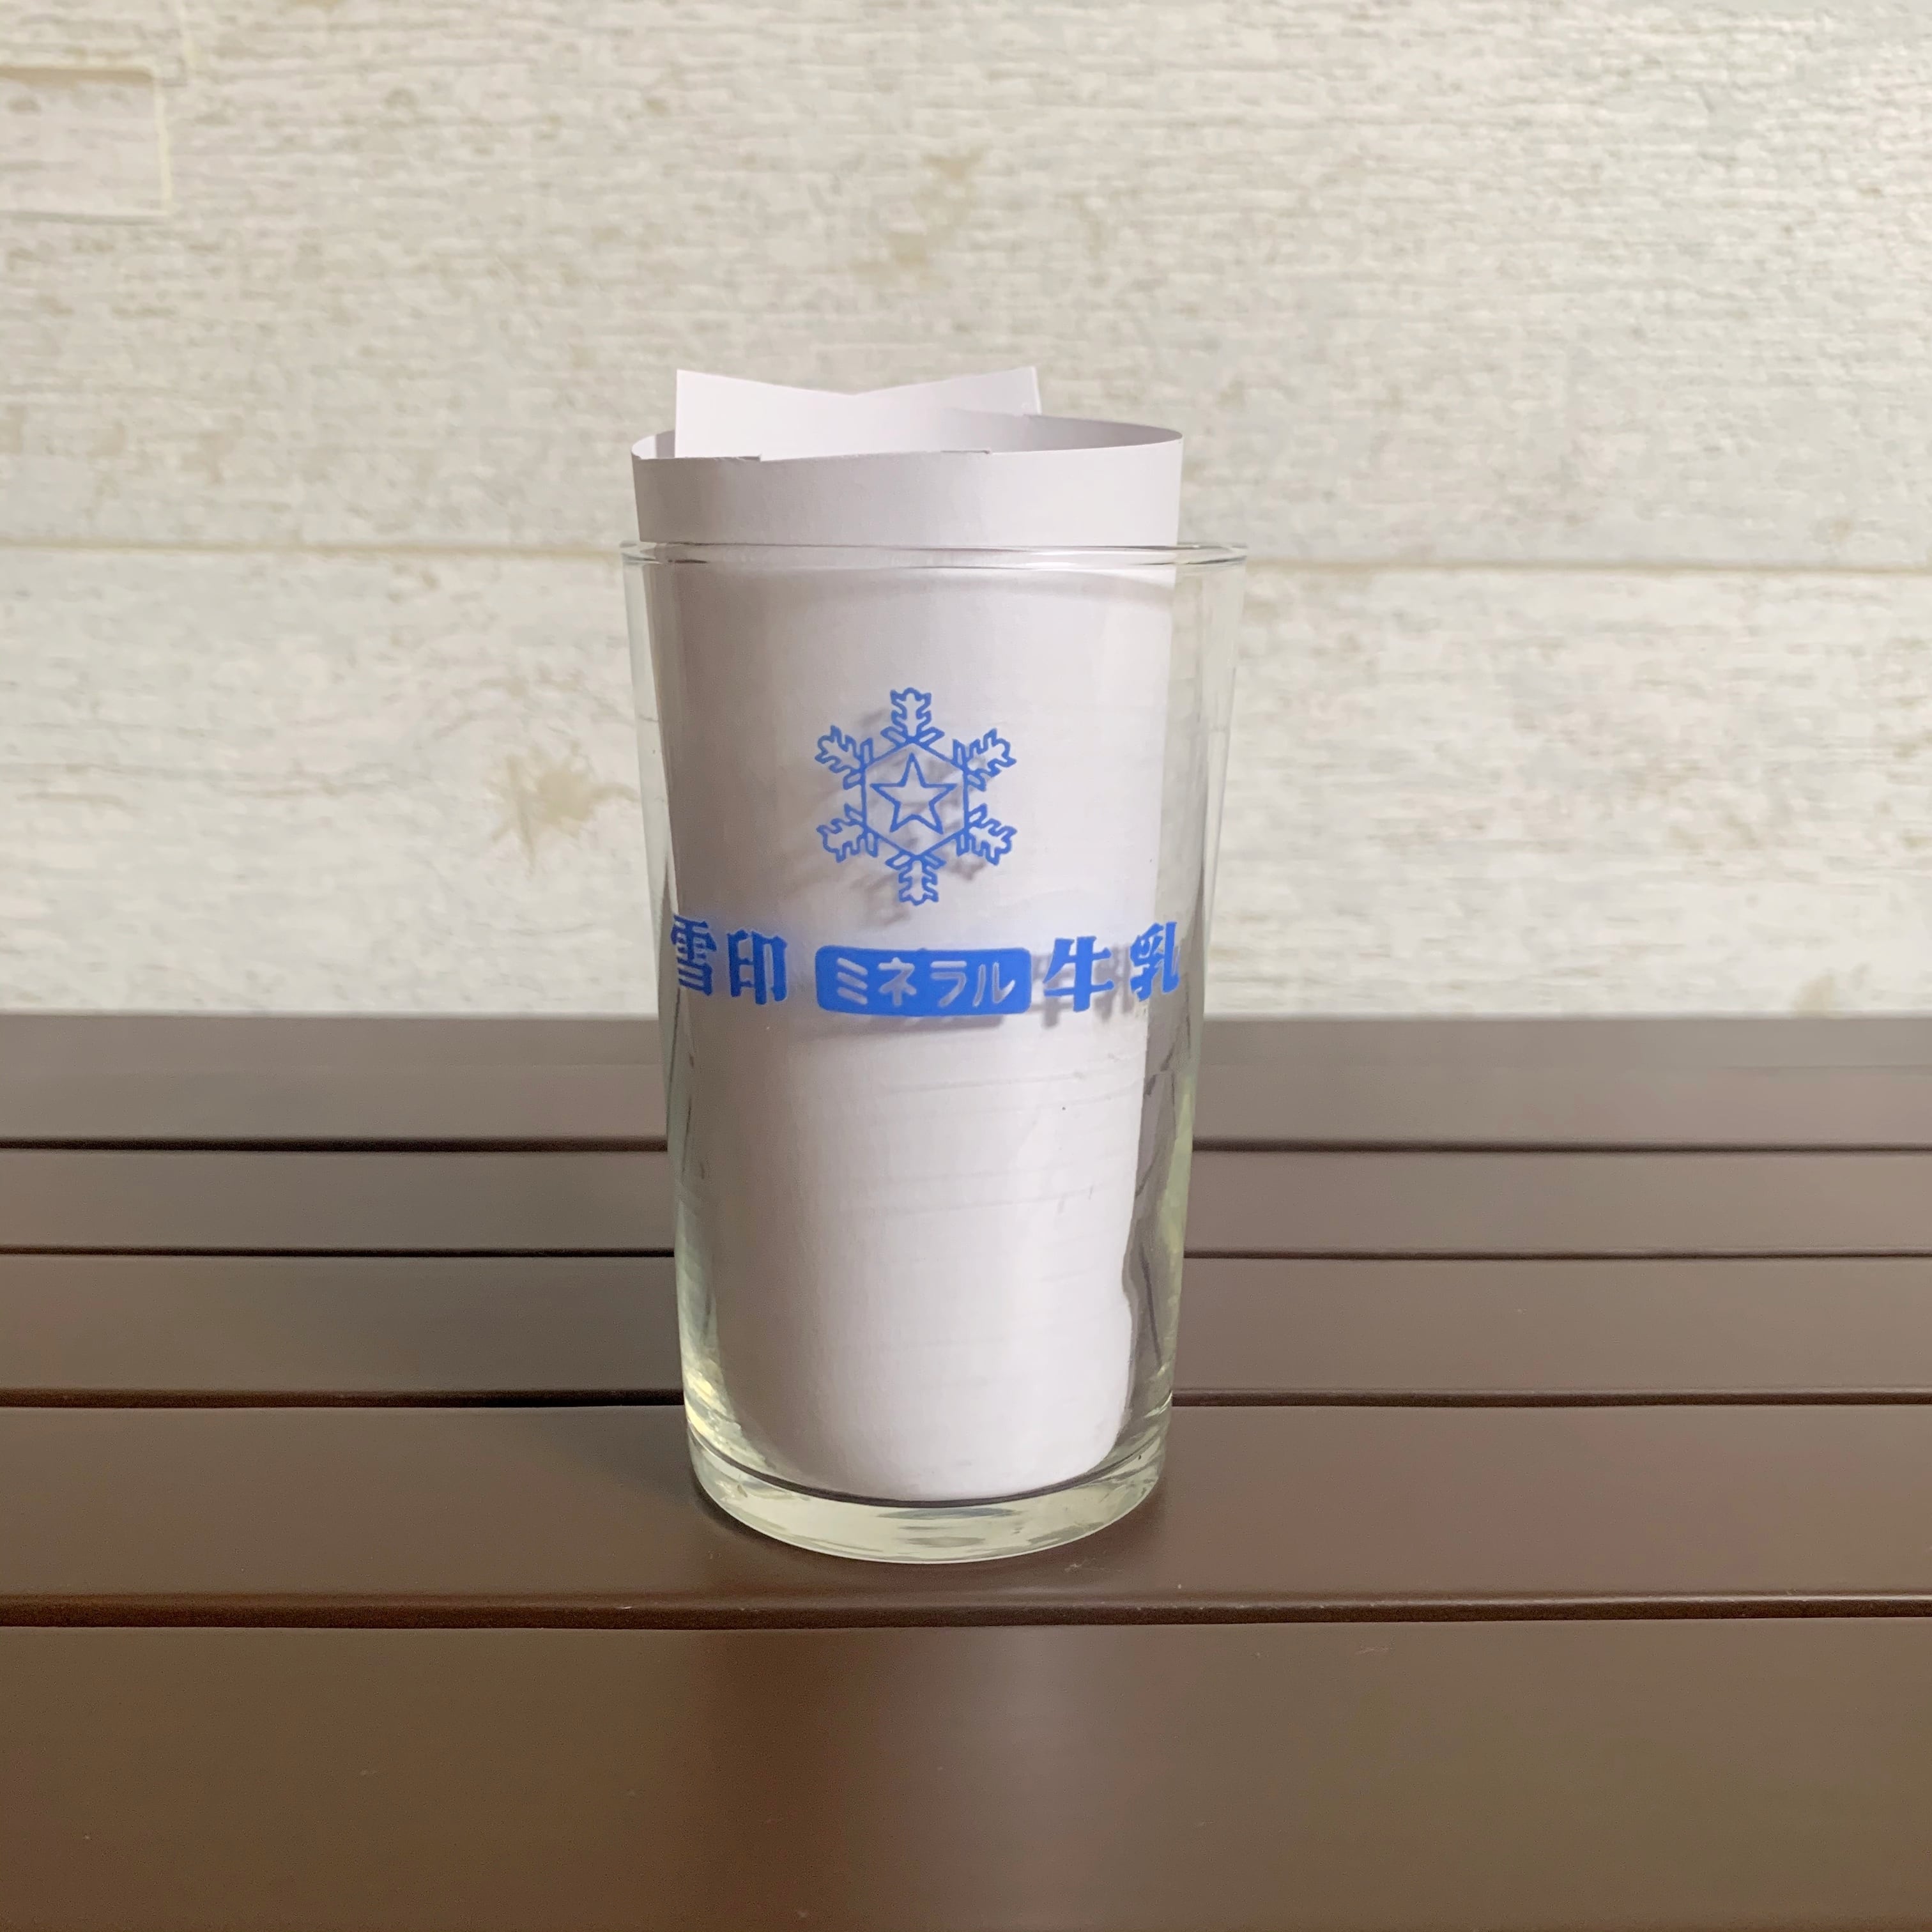 雪印牛乳 当時物 グラス ガラスコップ | RETRO ROOM ｰレトロルームｰ